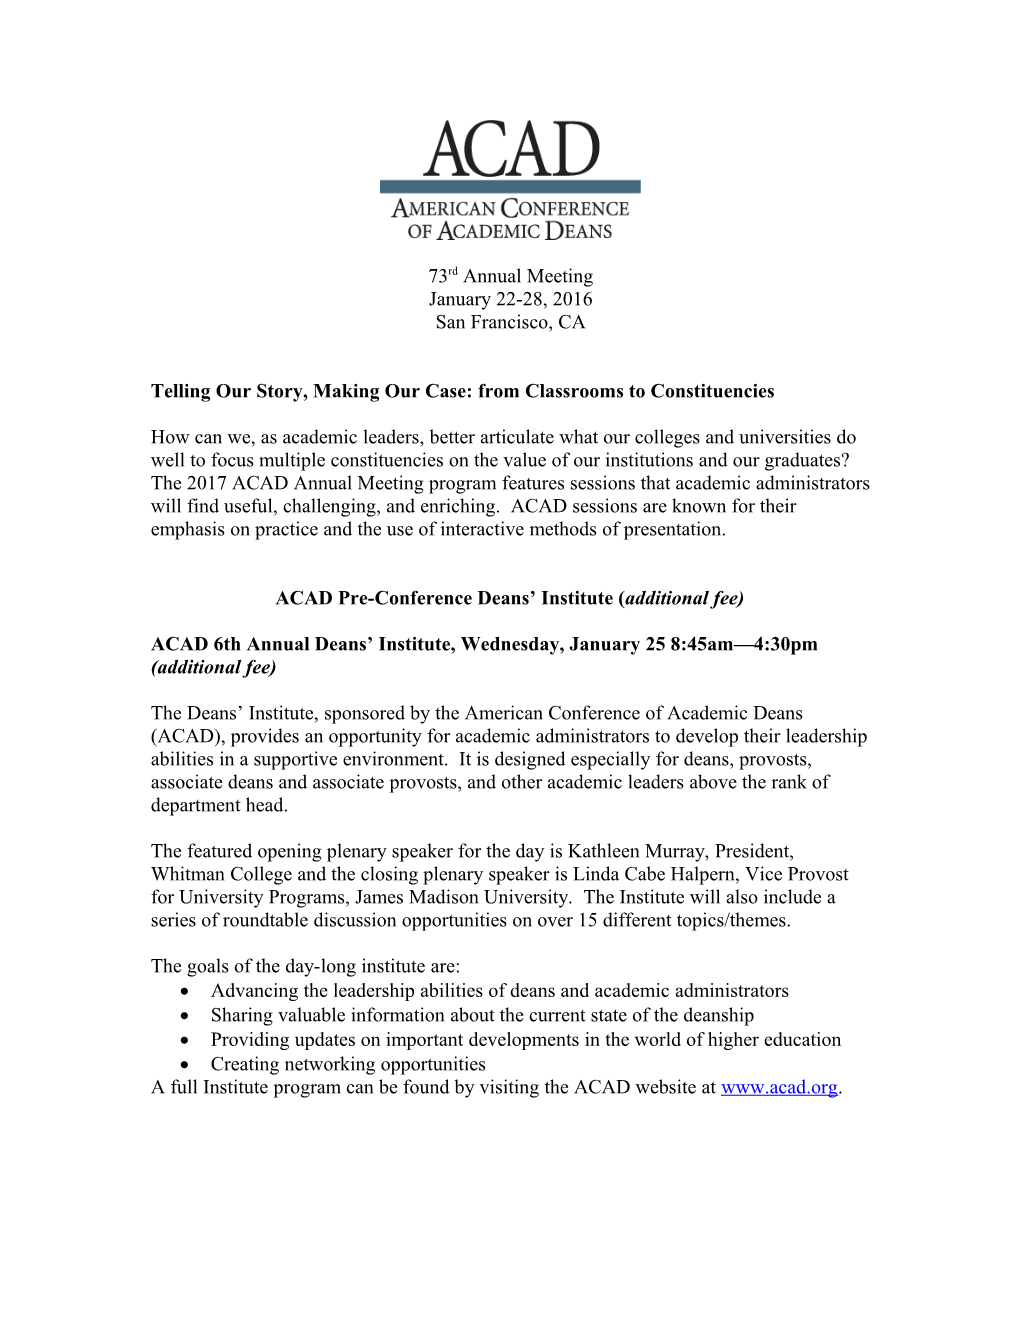 ACAD Pre-Conference Workshops